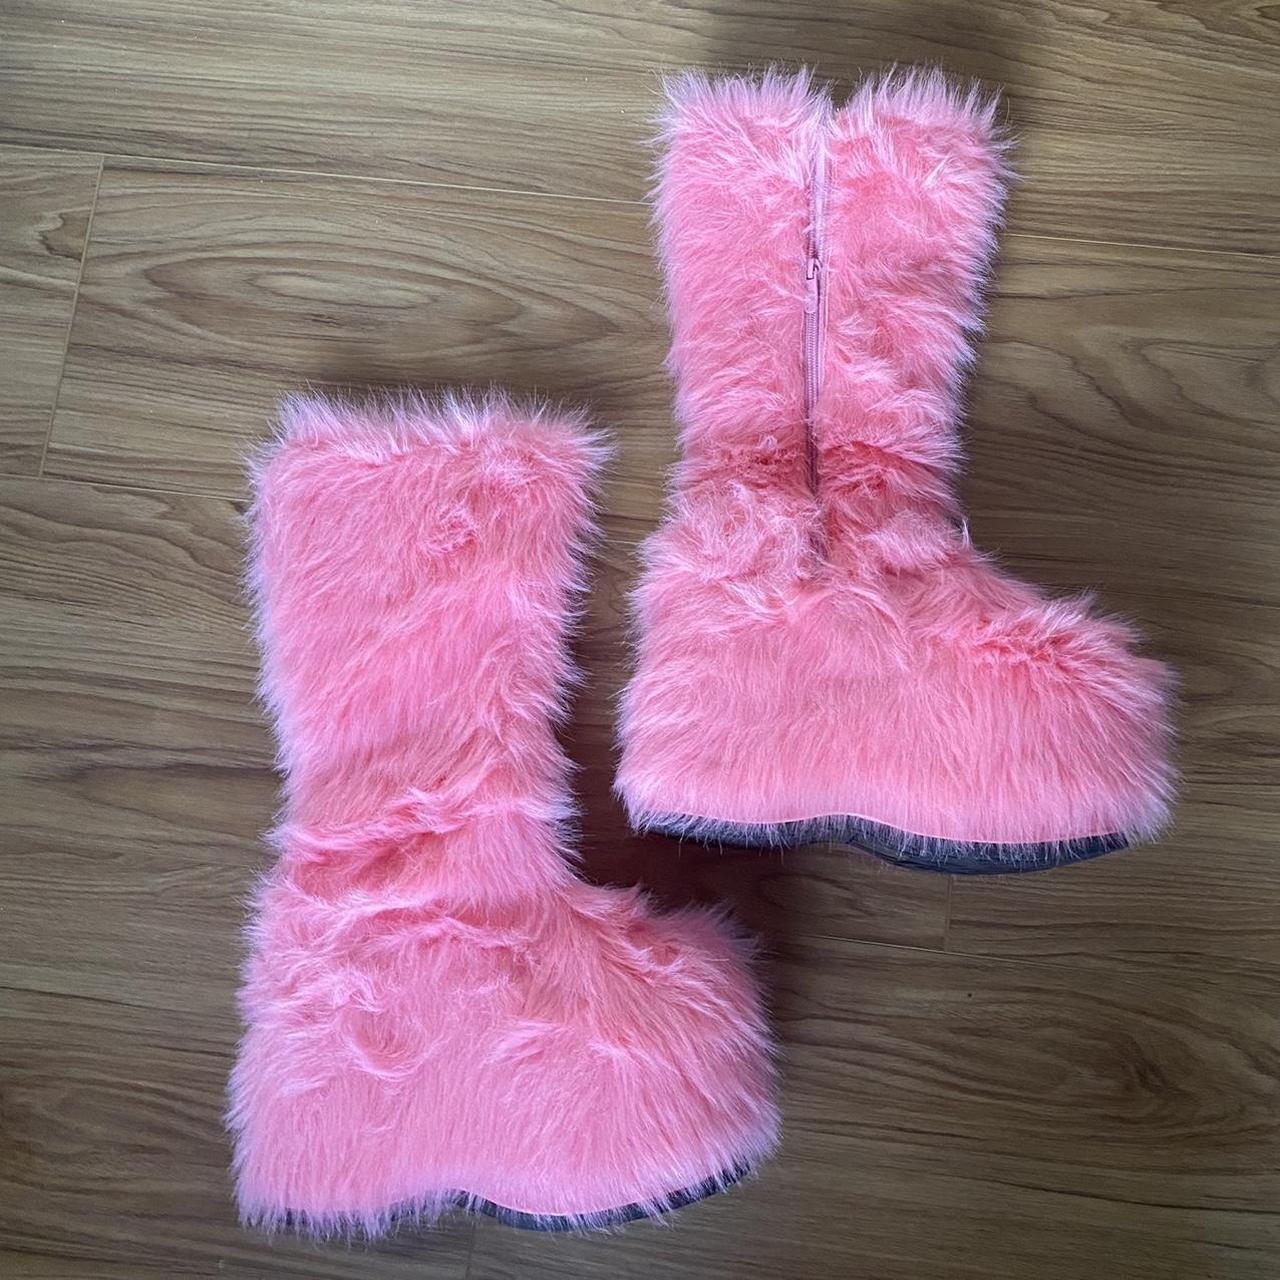 Faux fur pink platform boots size 8 - Depop